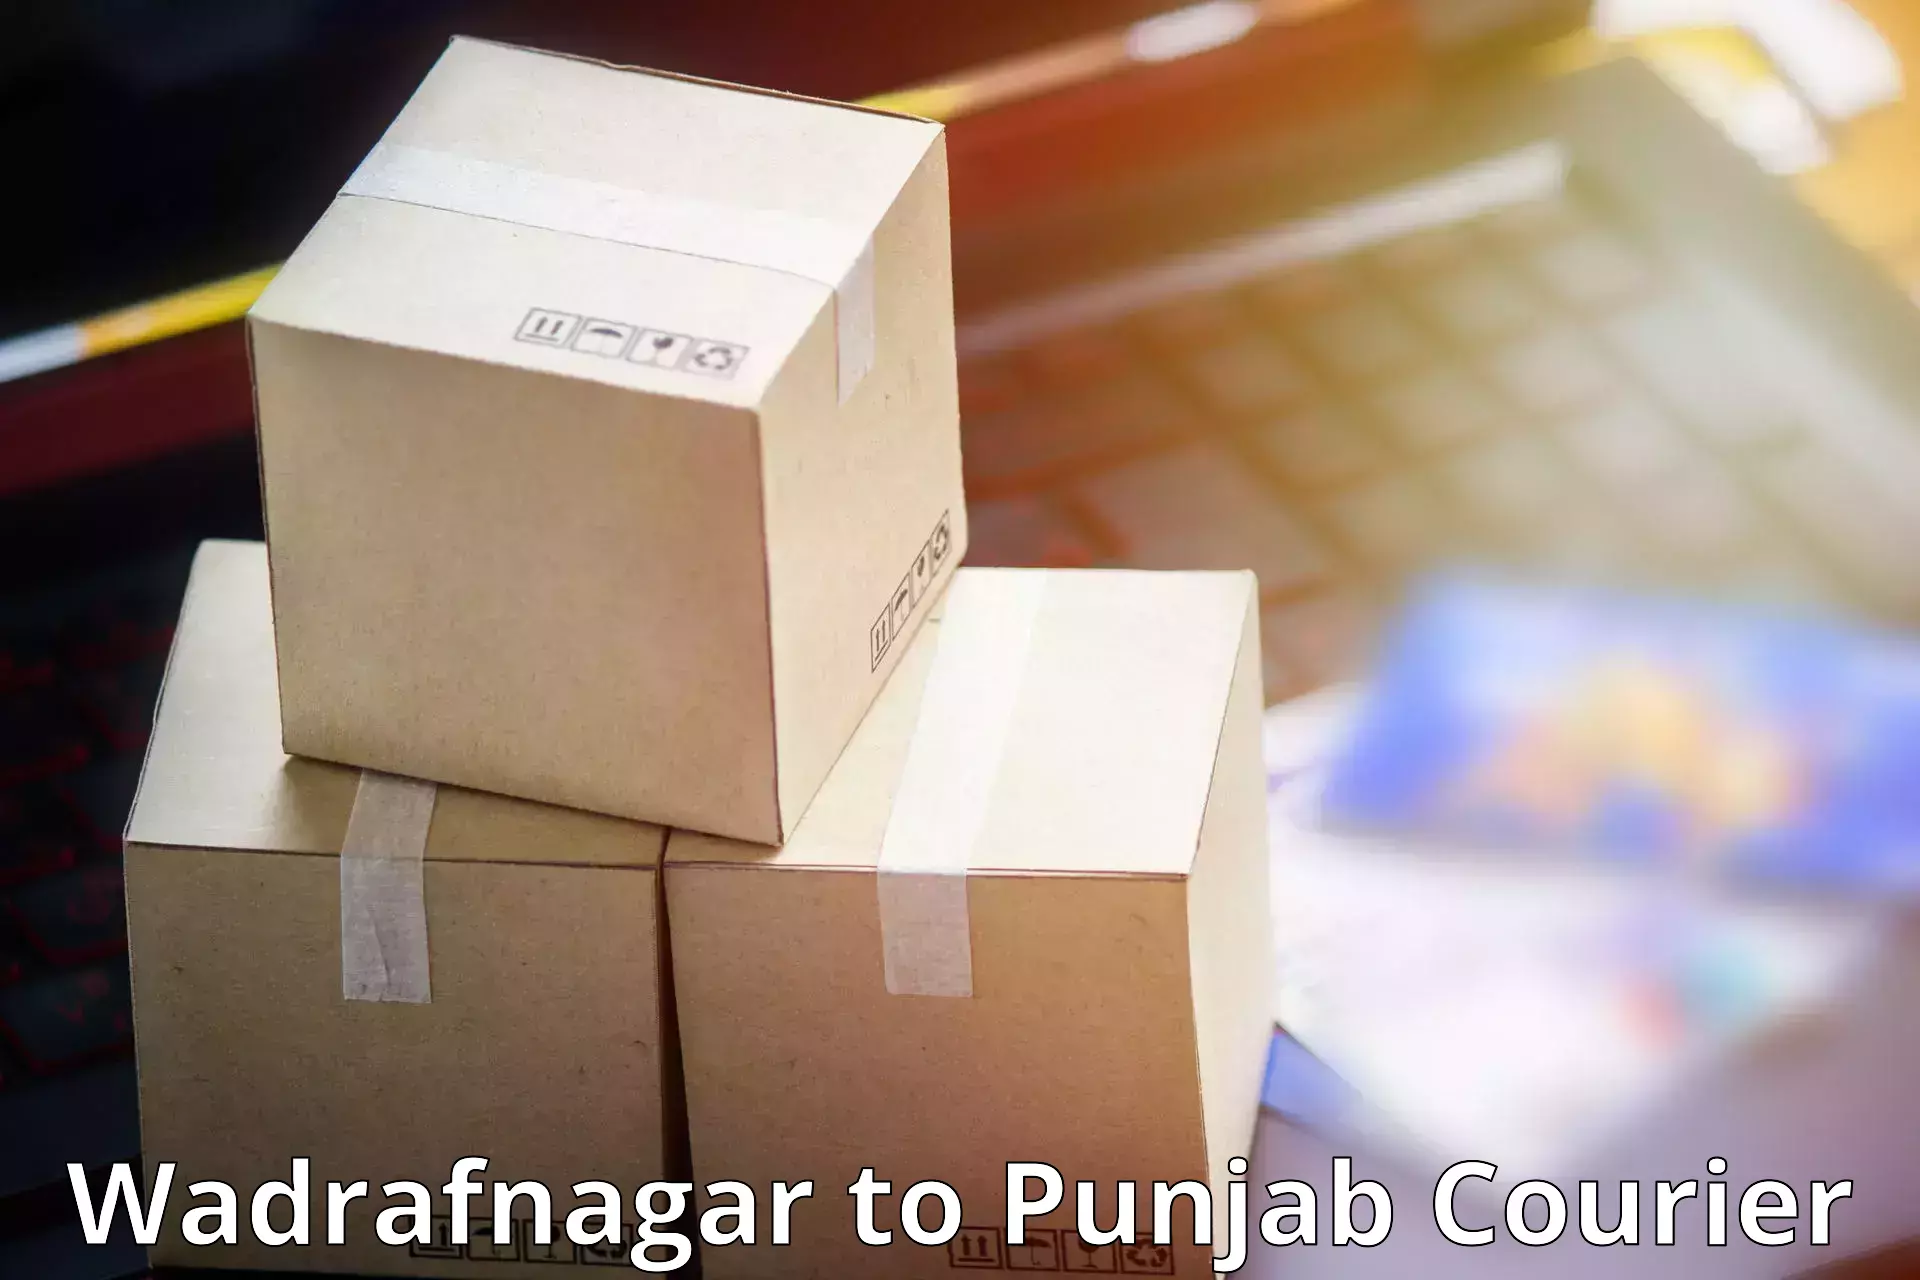 Multi-city courier Wadrafnagar to Amritsar